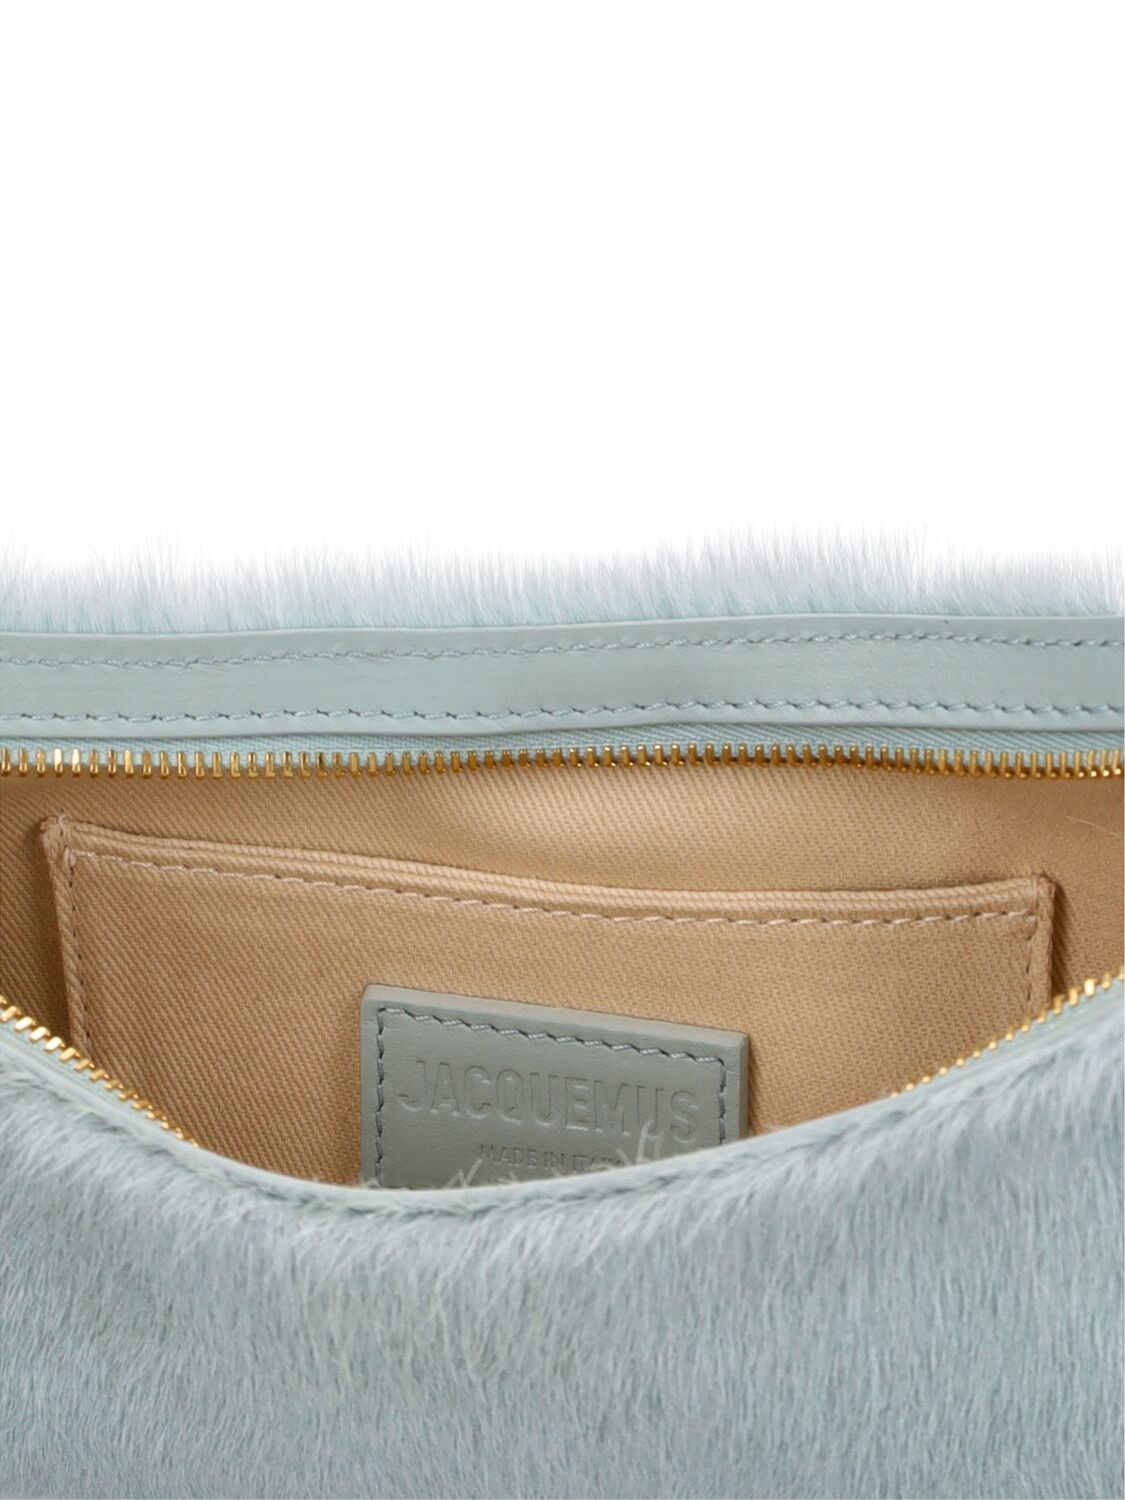 Shop Jacquemus Le Bisou Perle Ponyhair Leather Bag In Light Blue